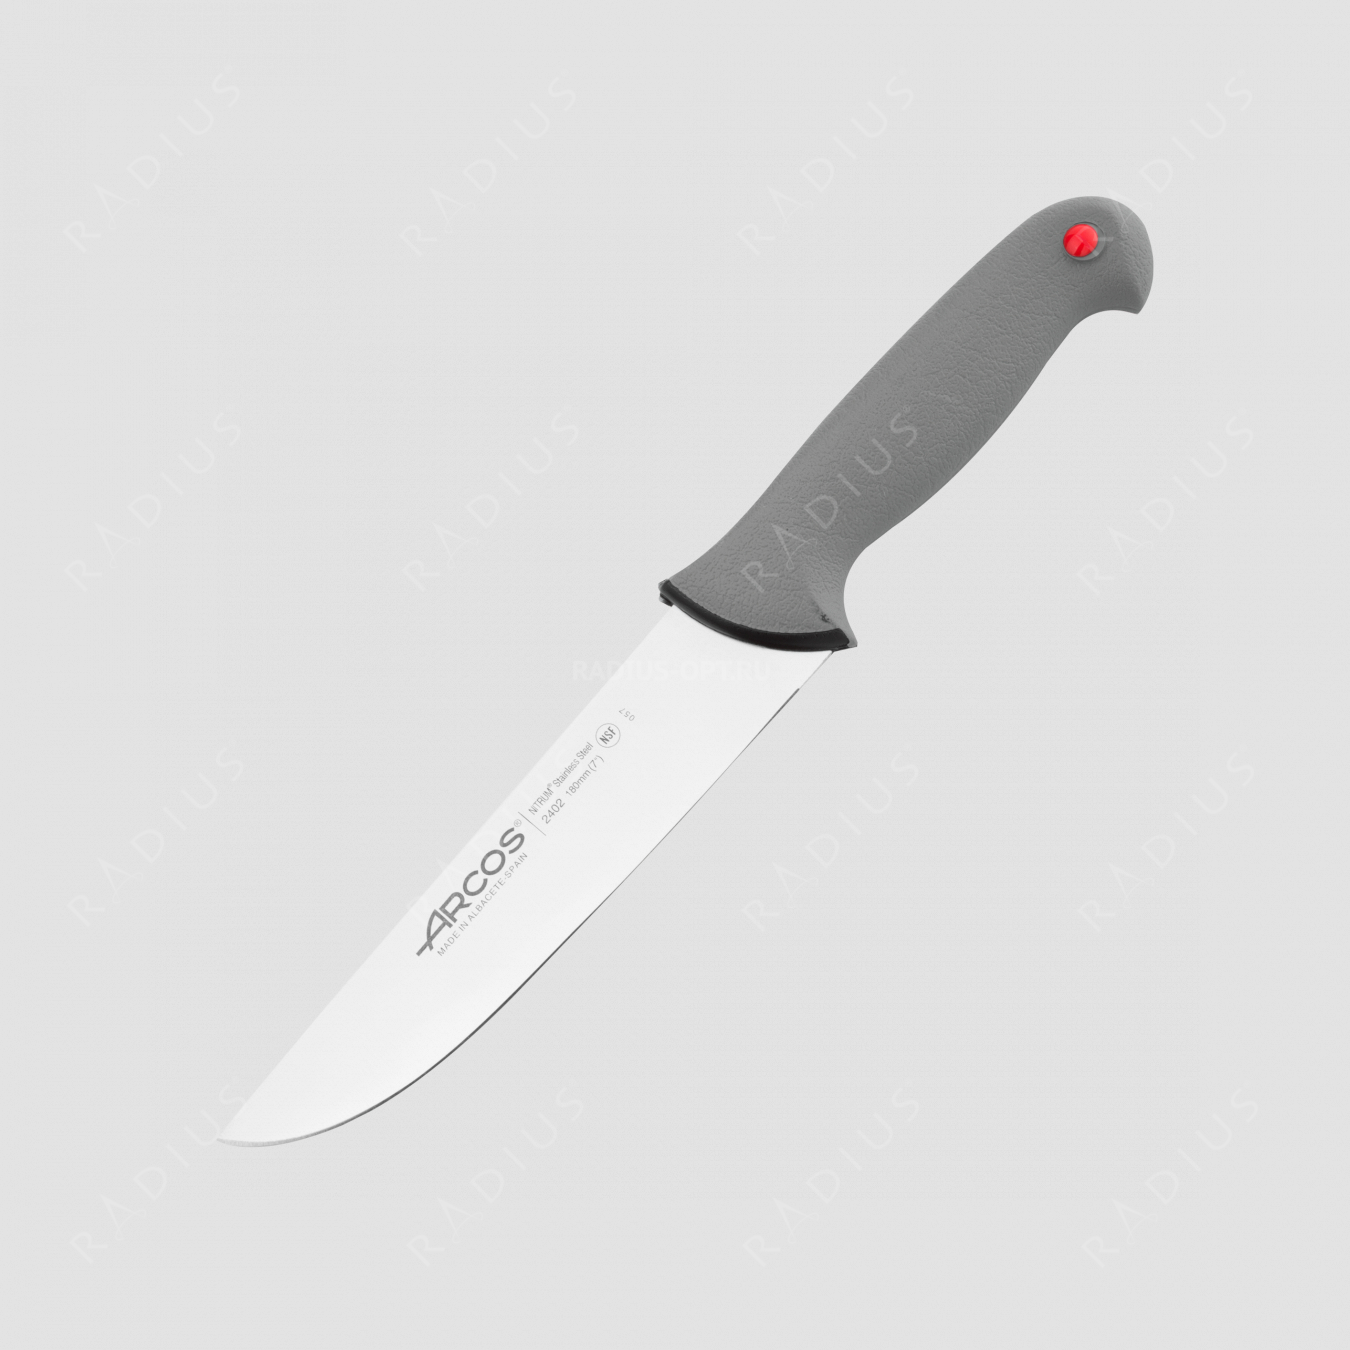 Нож кухонный разделочный 18 см, серия Colour-prof, ARCOS, Испания